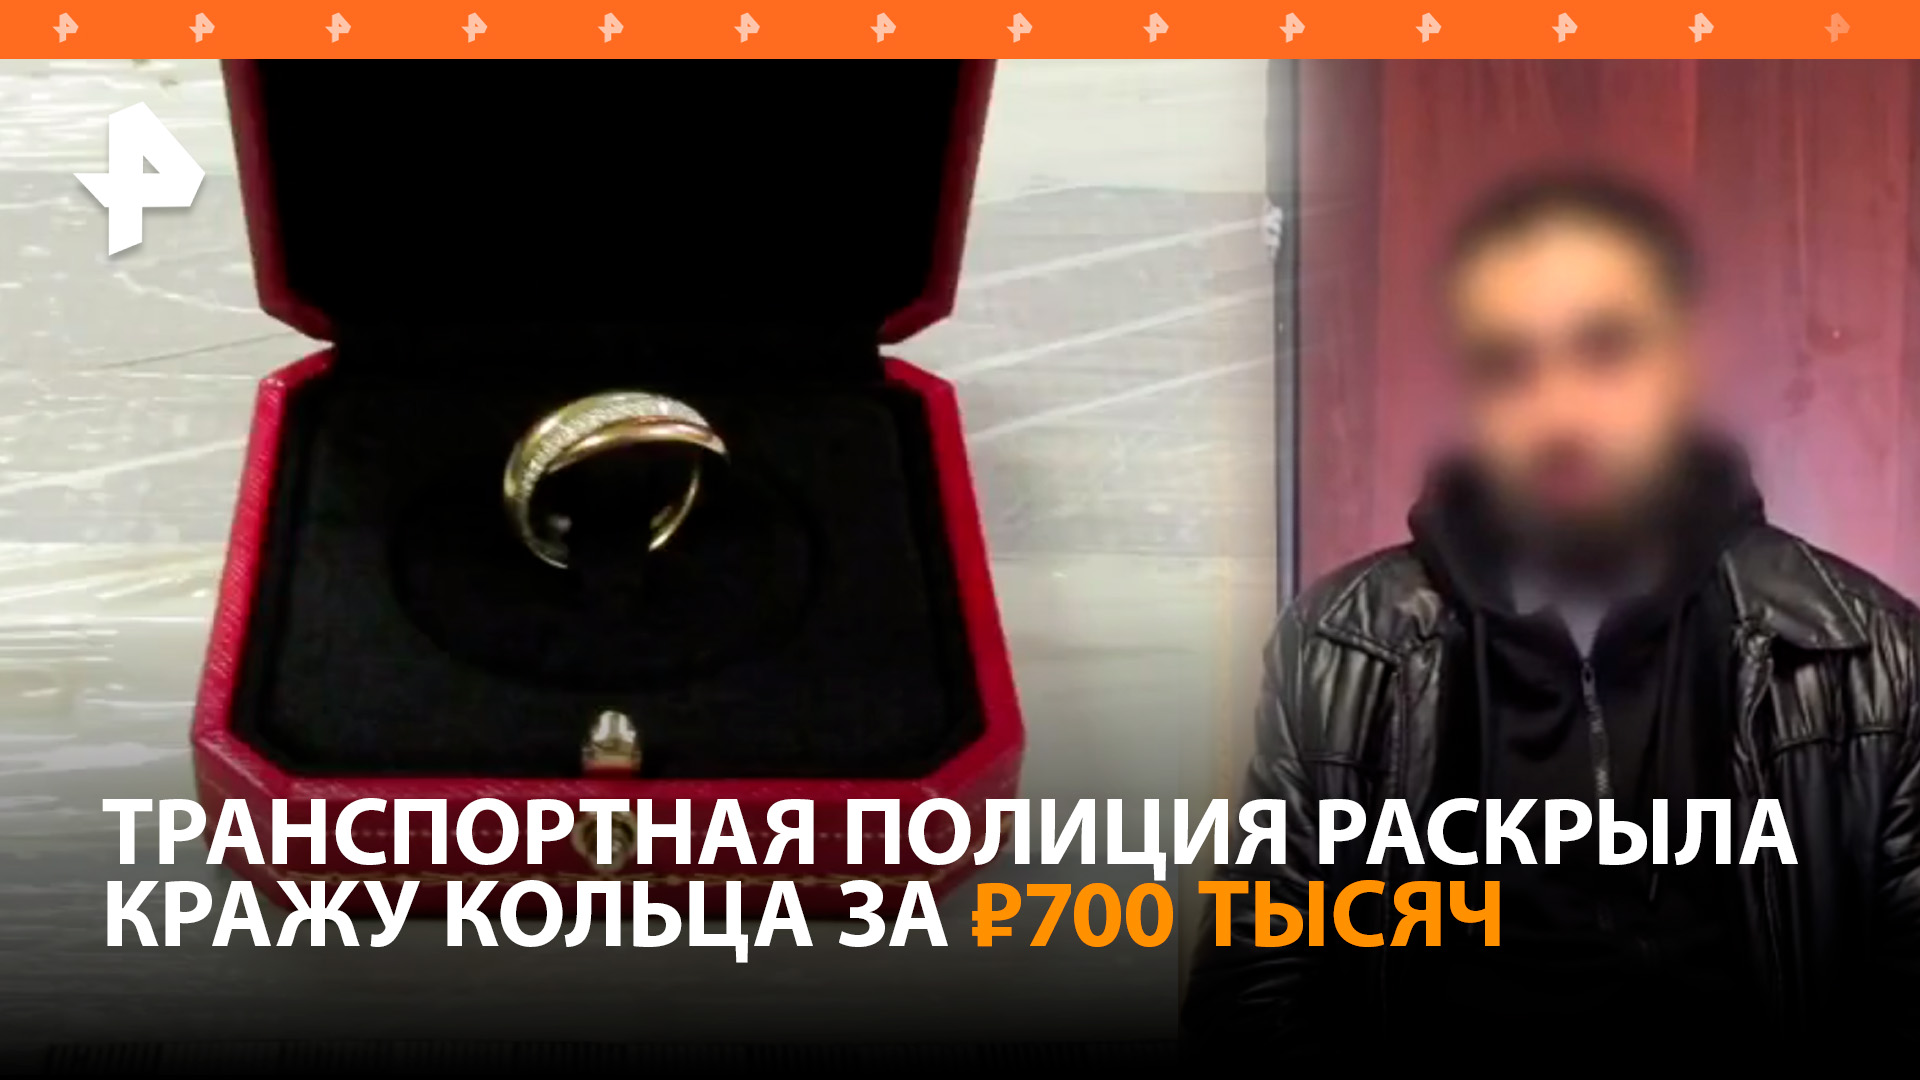 Кражу кольца почти за 700 тысяч рублей в аэропорту Домодедово раскрыли транспортные полицейские